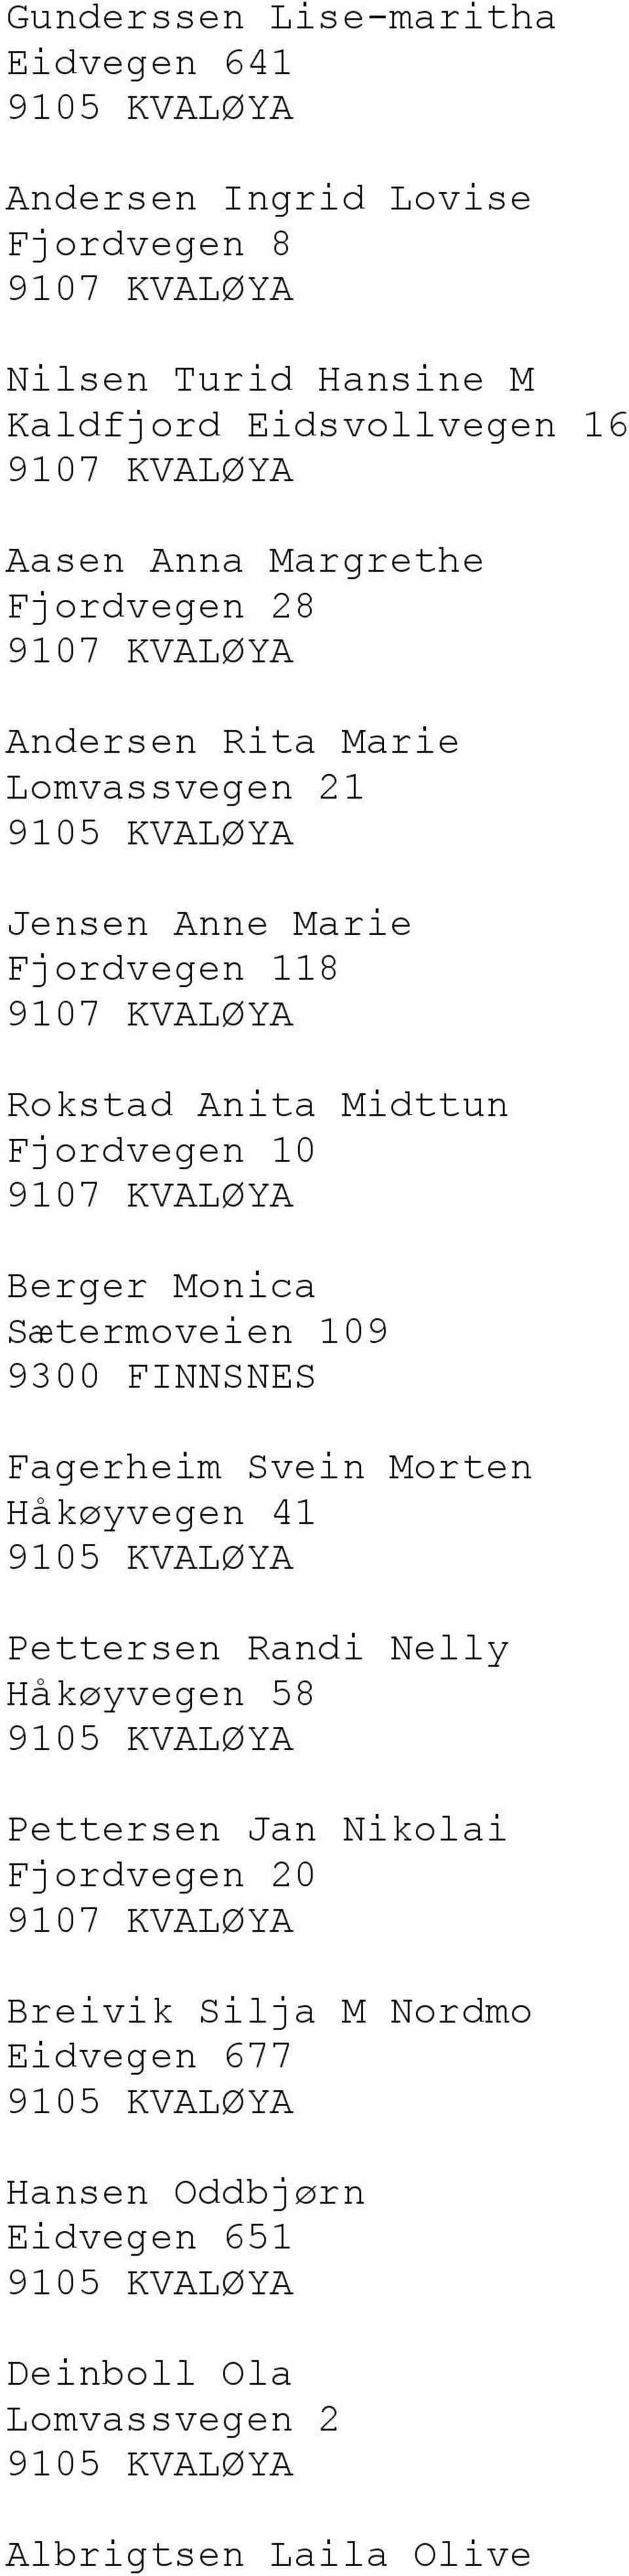 10 Berger Monica Sætermoveien 109 9300 FINNSNES Fagerheim Svein Morten Håkøyvegen 41 Pettersen Randi Nelly Håkøyvegen 58 Pettersen